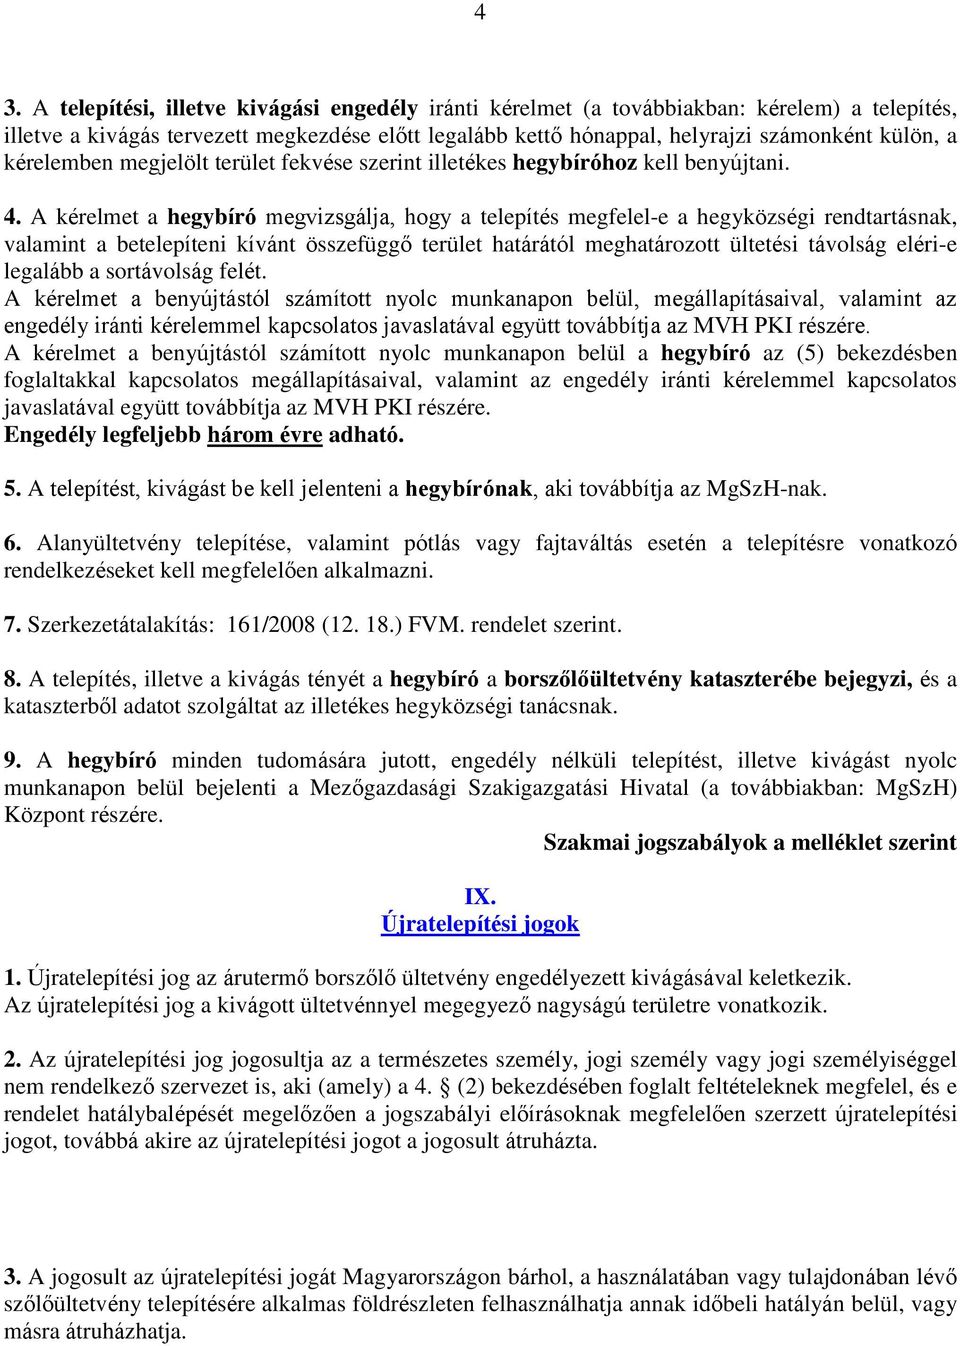 HEGYKÖZSÉGI RENDTARTÁS - PDF Free Download